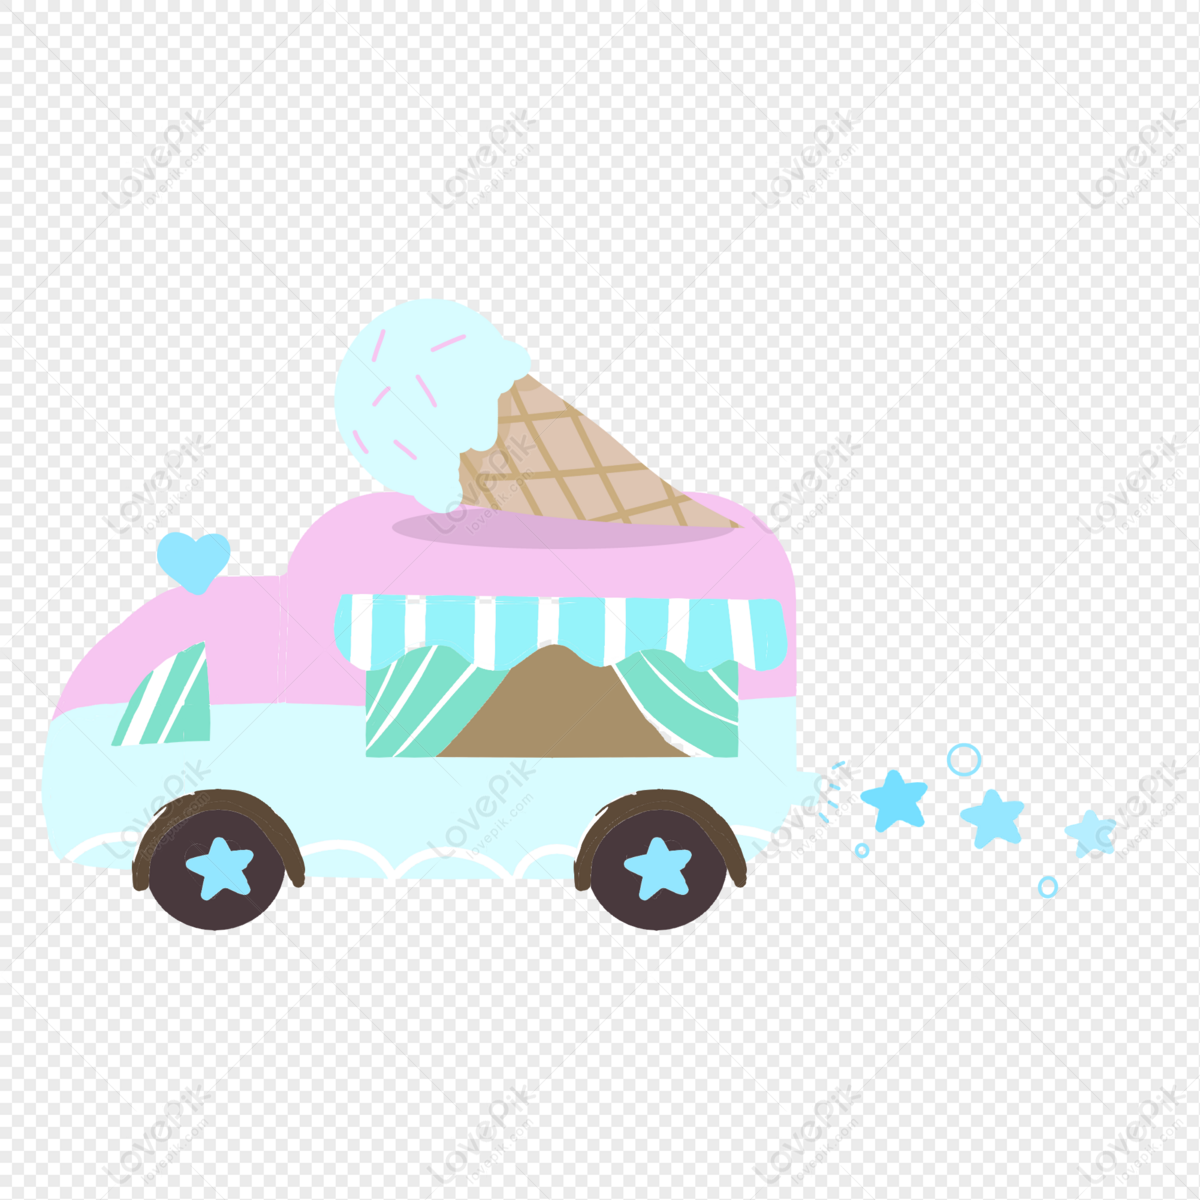 Kem Xe ô Tô là một loại kem độc đáo và thú vị được bán trực tiếp trên chiếc xe ô tô. Hãy xem bức hình về Kem Xe ô Tô để khám phá thế giới tuyệt vời của món kem thơm ngon và đầy sáng tạo này.